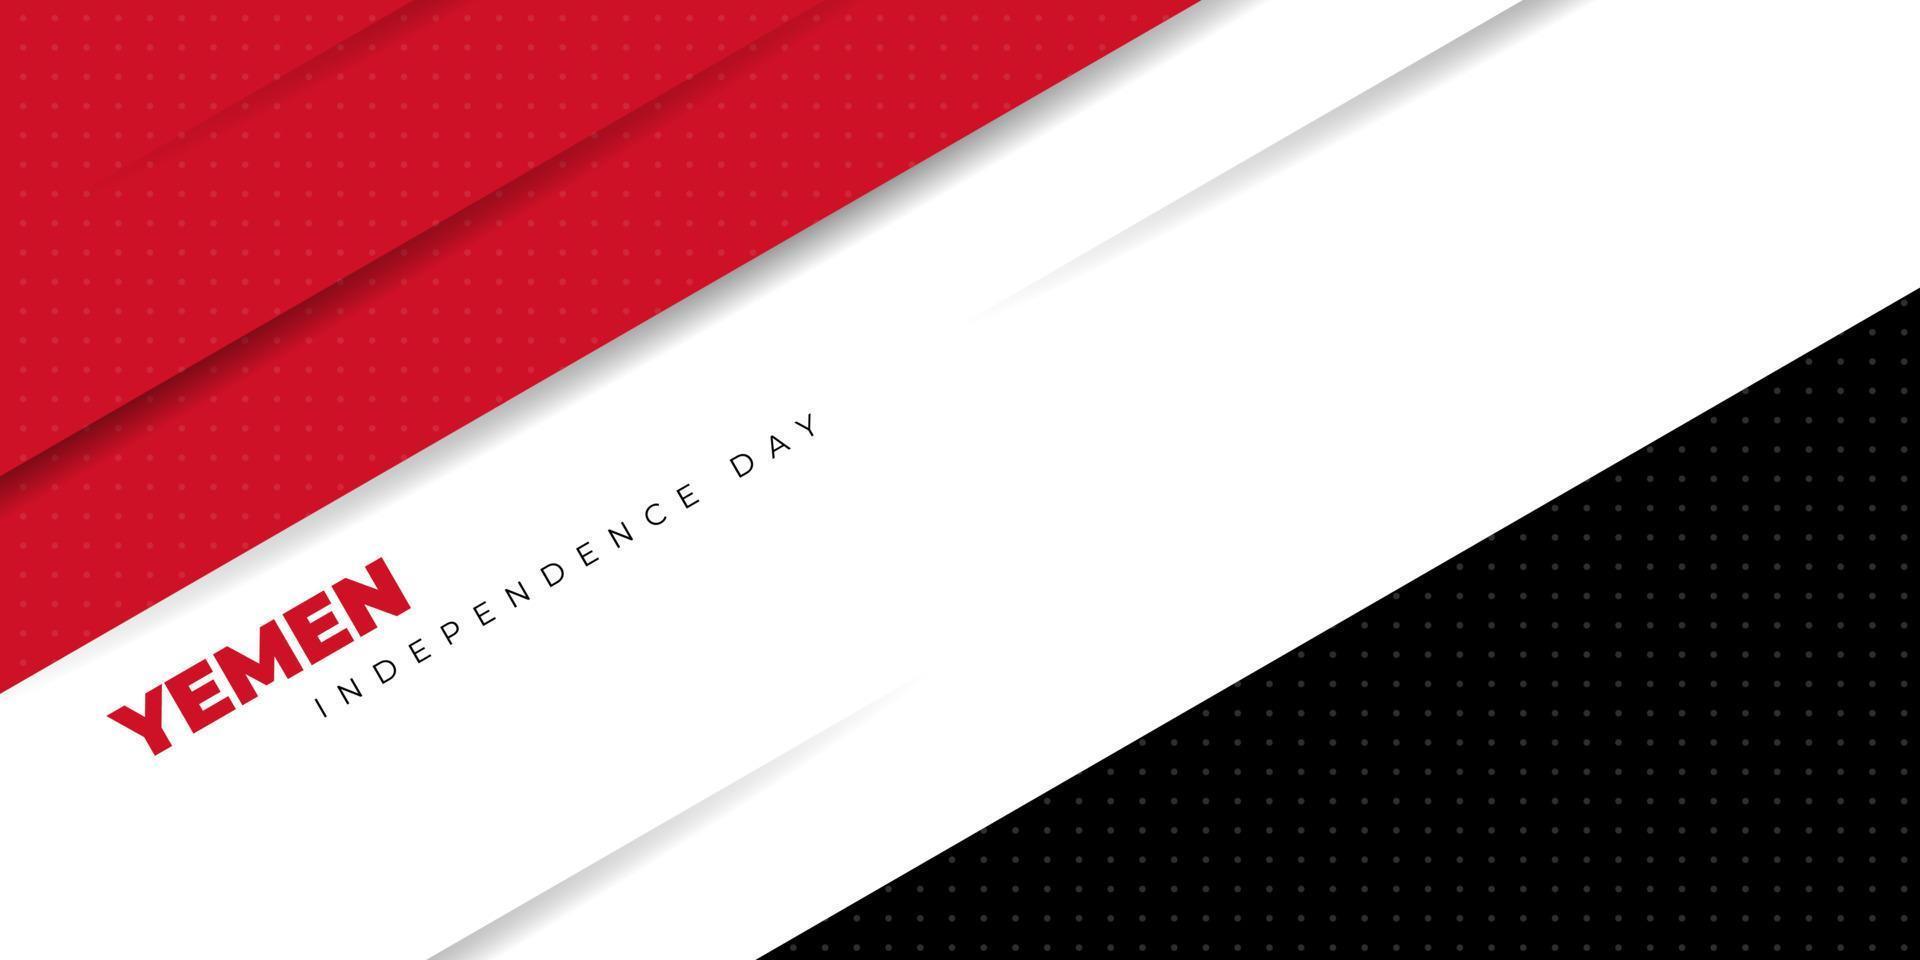 rood, wit en zwart geometrisch ontwerp als achtergrond. jemen onafhankelijkheidsdag achtergrond sjabloon. vector